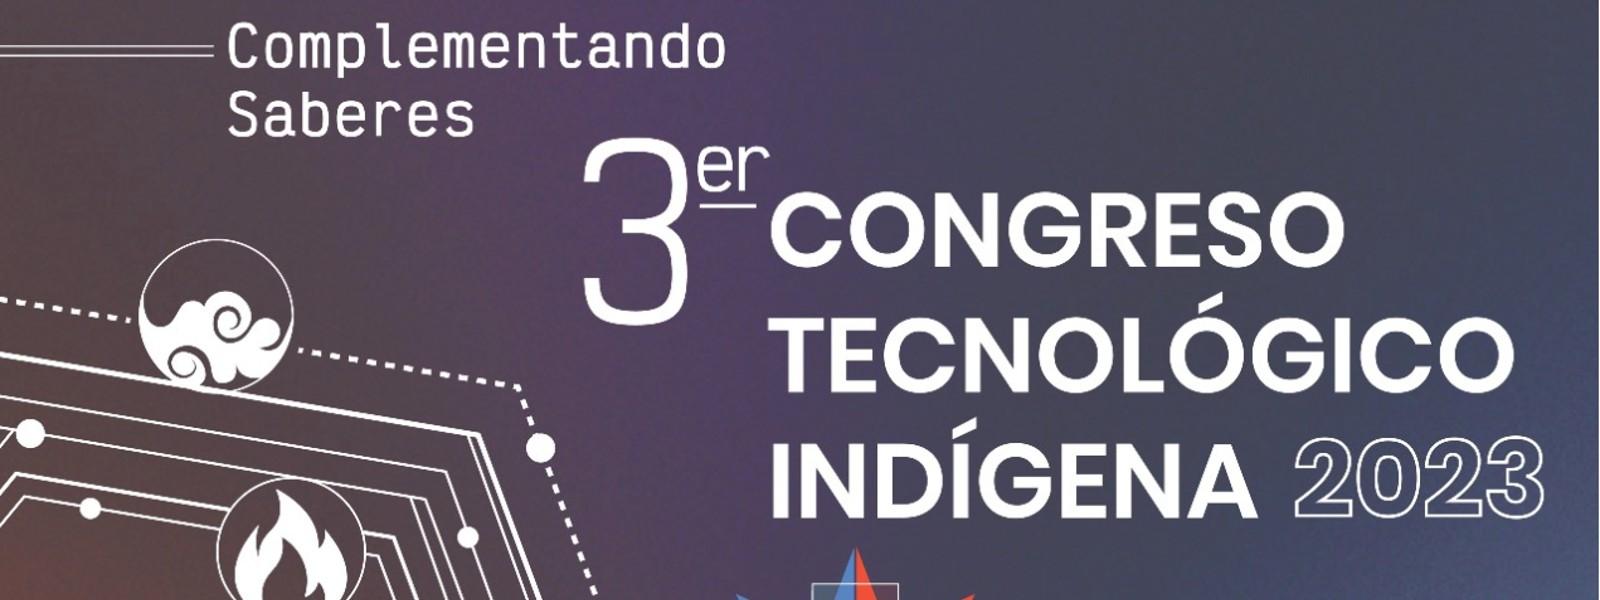 congreso tecnológico indígena